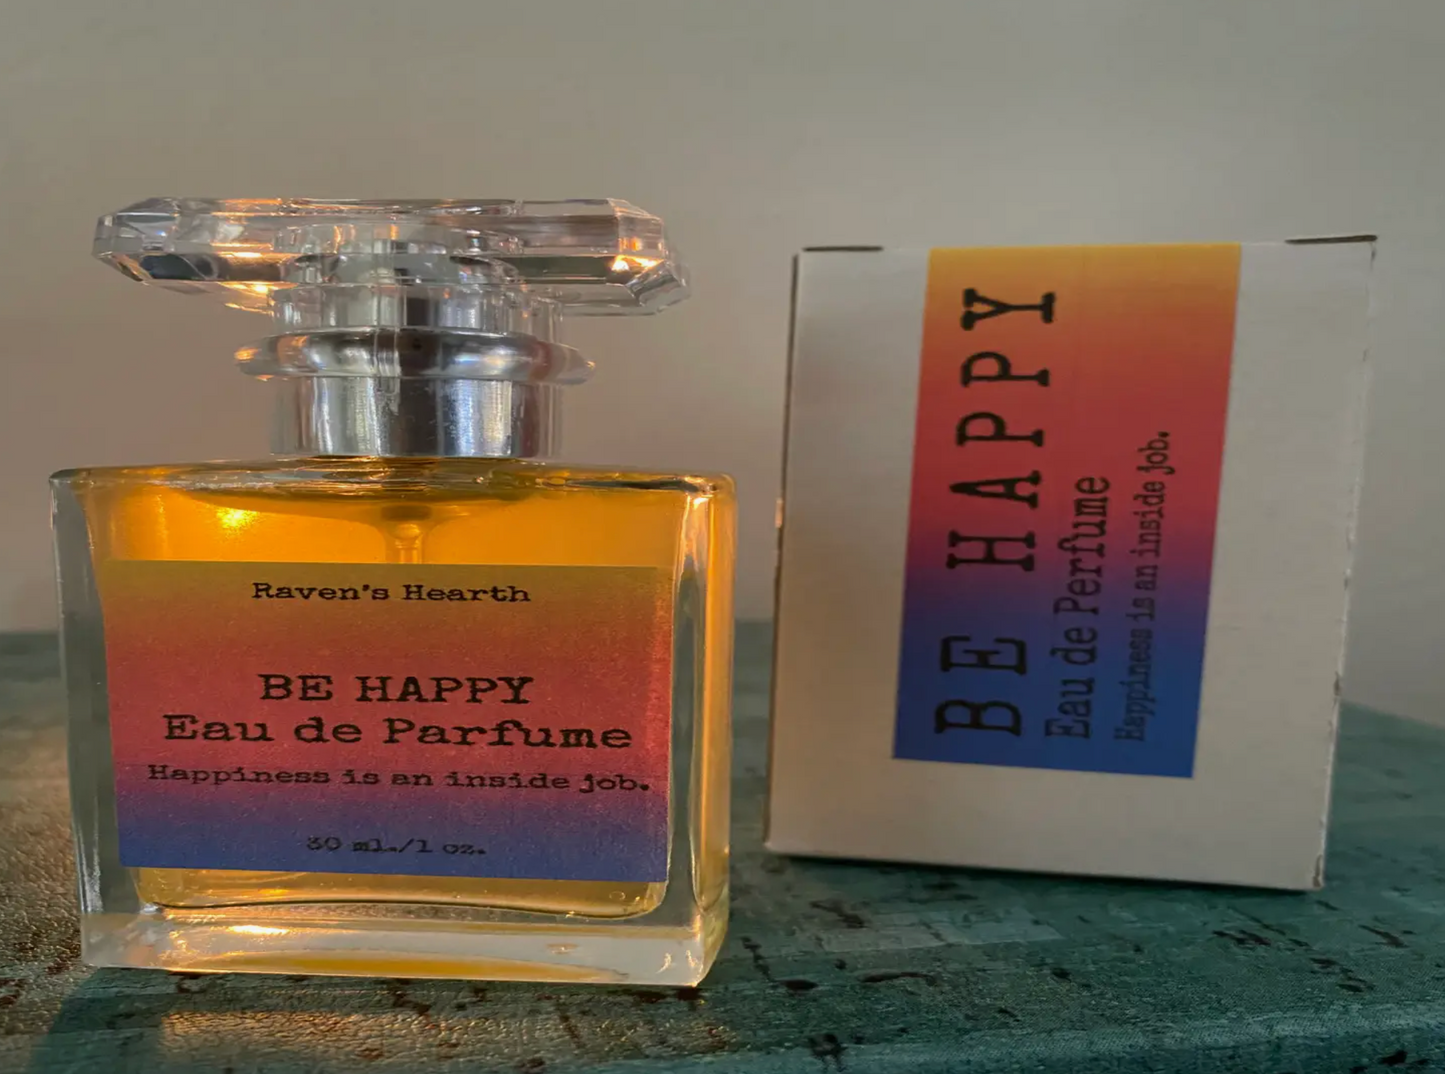 BE HAPPY 🙂 Eau de Parfume